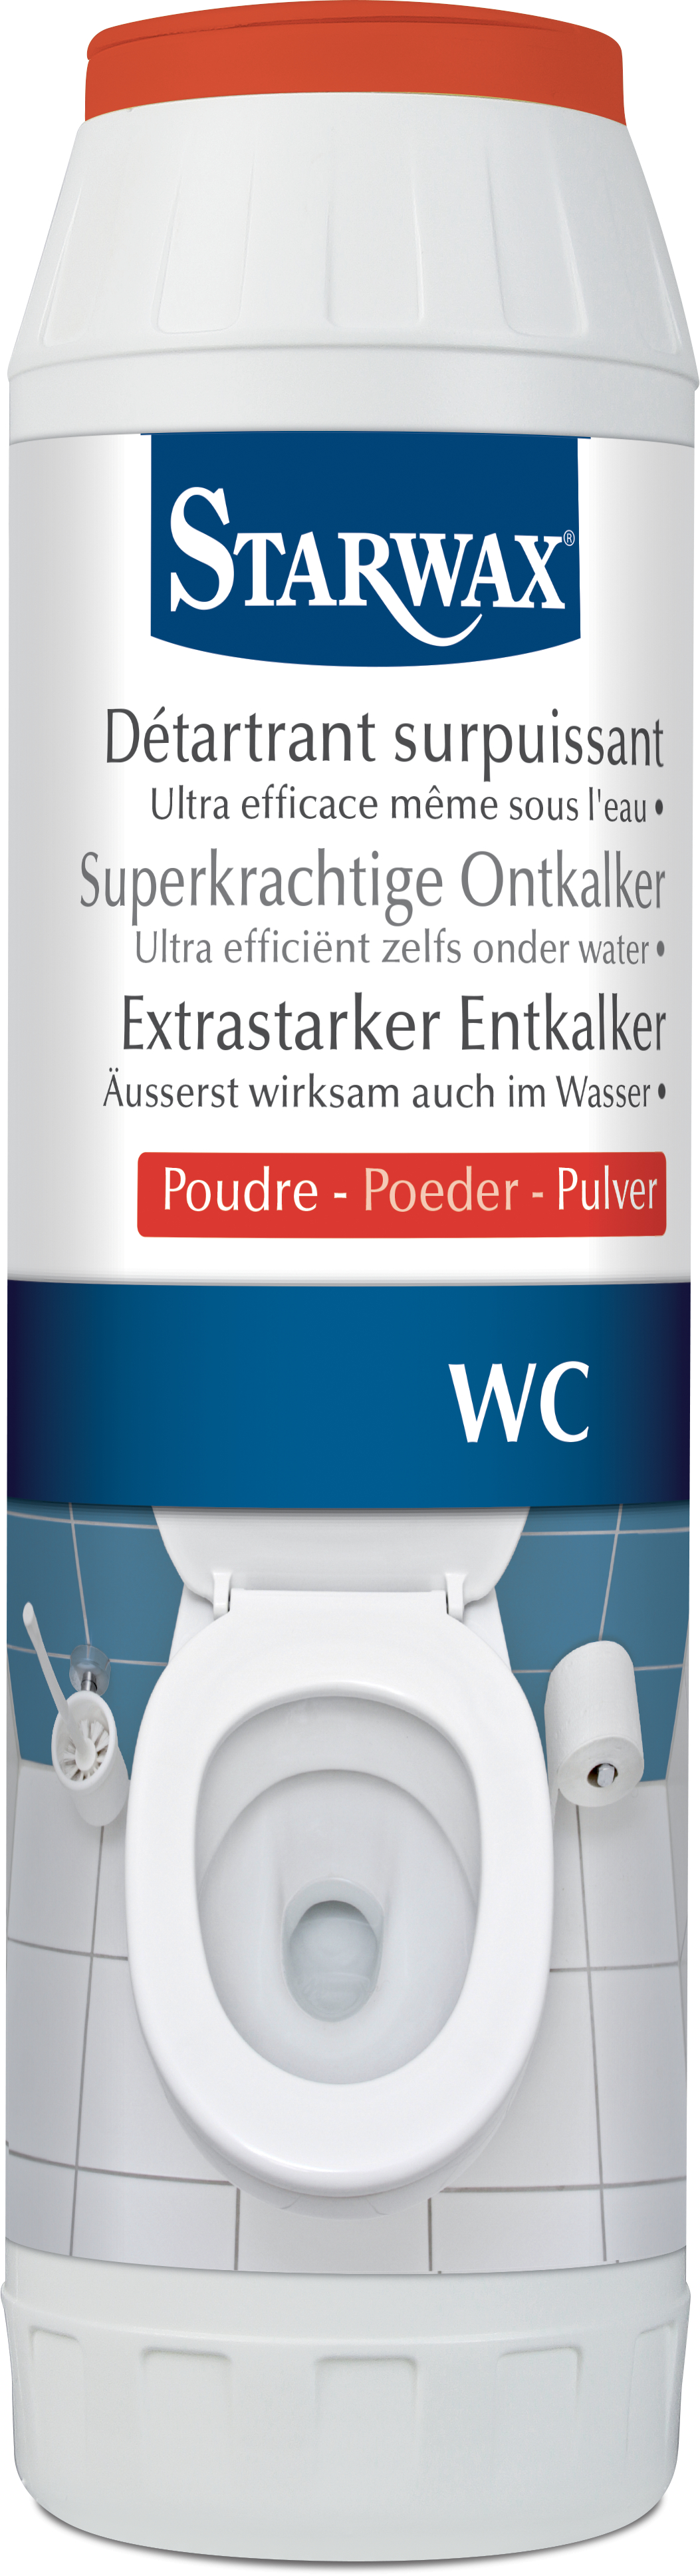 Starwax poudre détartrante surpuissante pour toilettes - 1KG